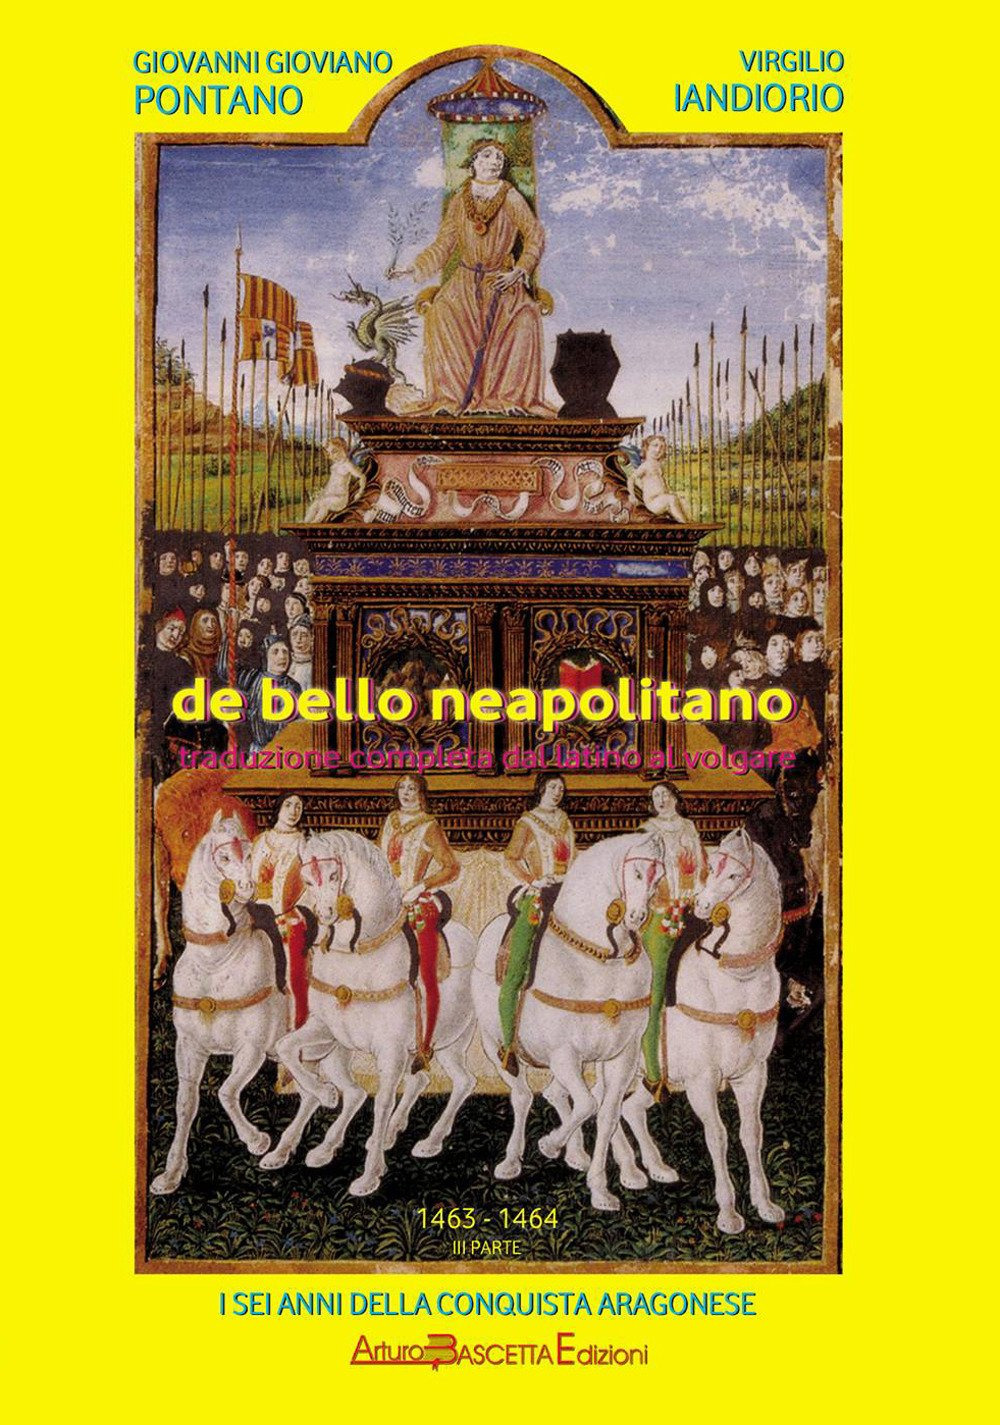 De bello neapolitano. Traduzione completa dal latino al volgare. Vol. 1: 1458-1460. I sei anni della conquista aragonese